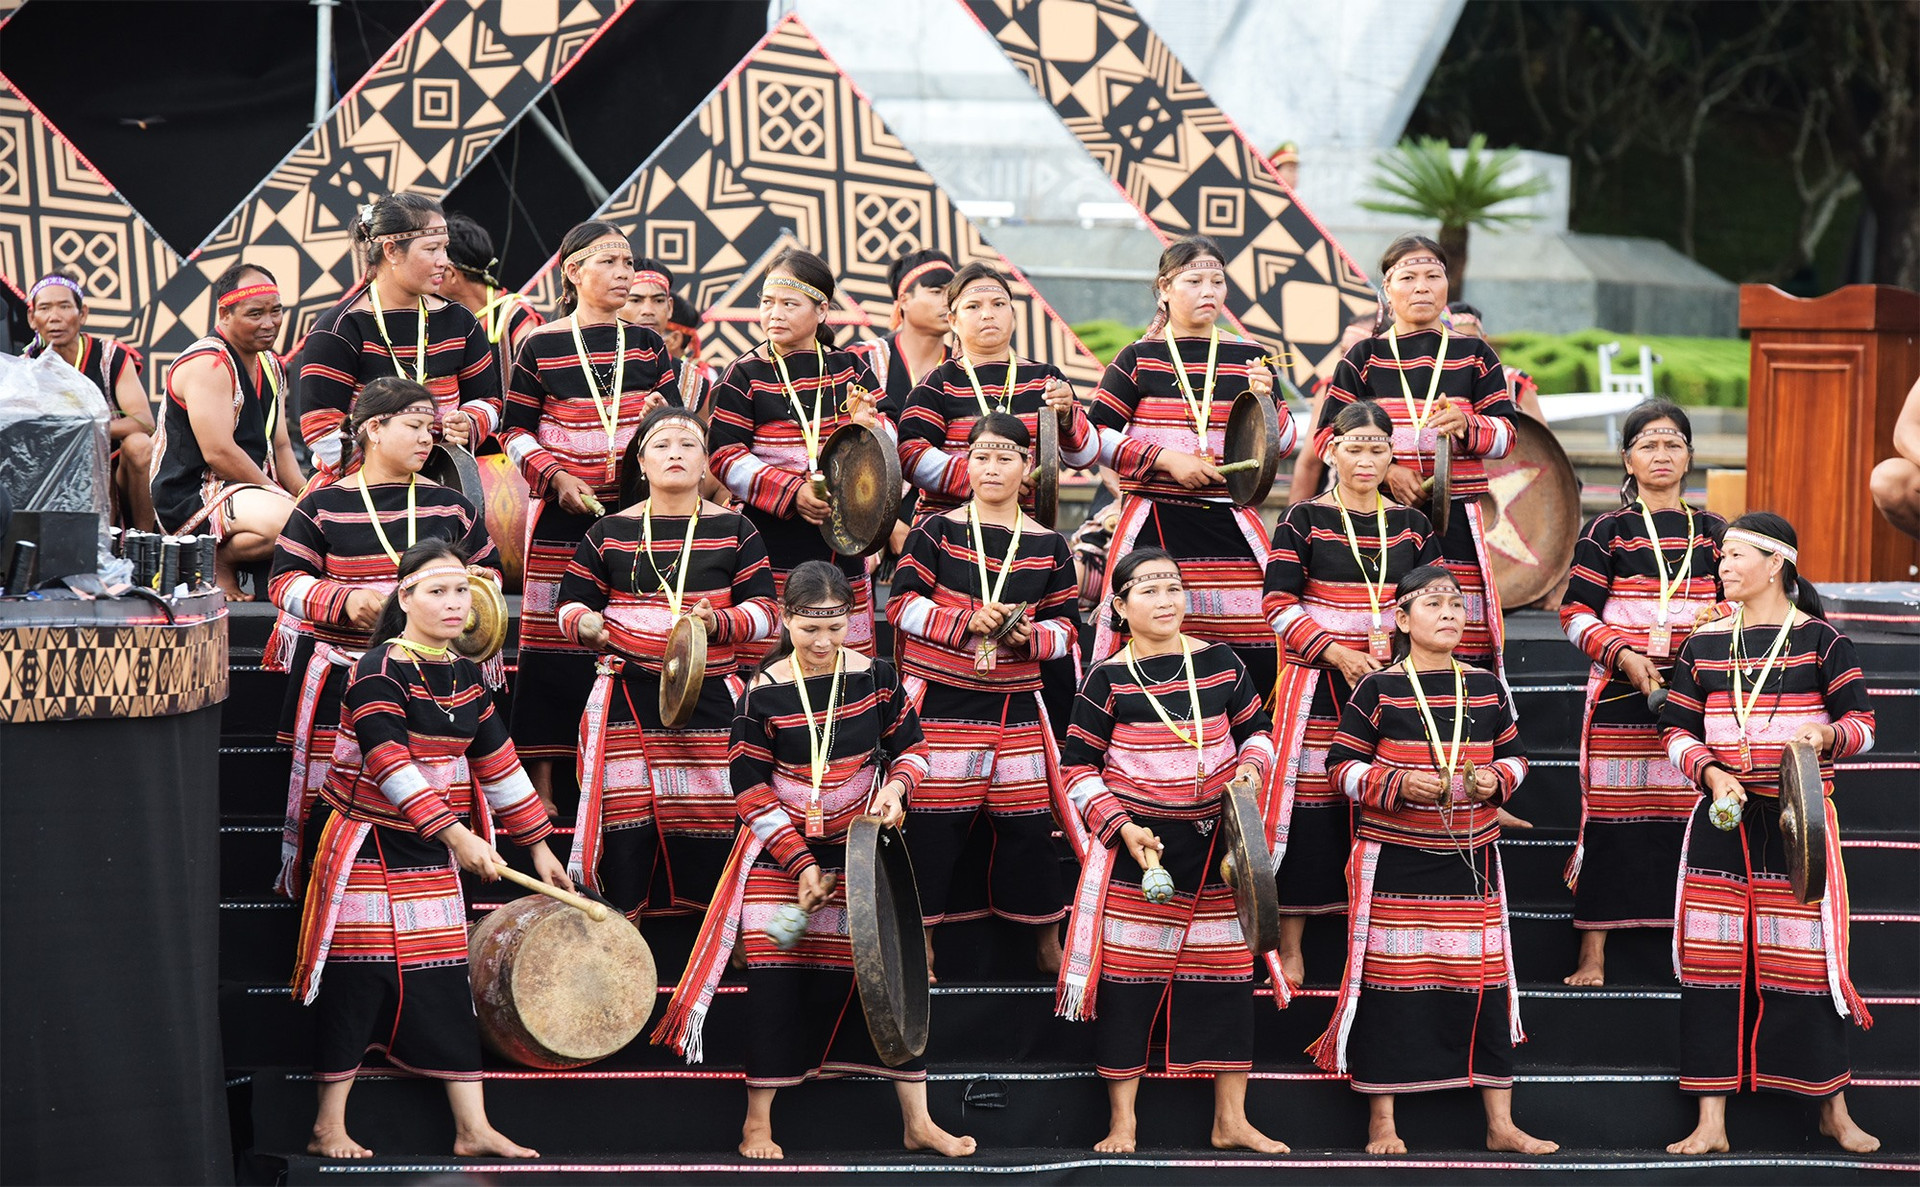 Cồng chiêng Tây Nguyên trải rộng suốt 5 tỉnh Kon Tum, Gia Lai, Đăk Lăk, Đăk Nông và Lâm Đồng được UNESCO công nhận là kiệt tác truyền khẩu và di sản văn hóa phi vật thể của nhân loại.